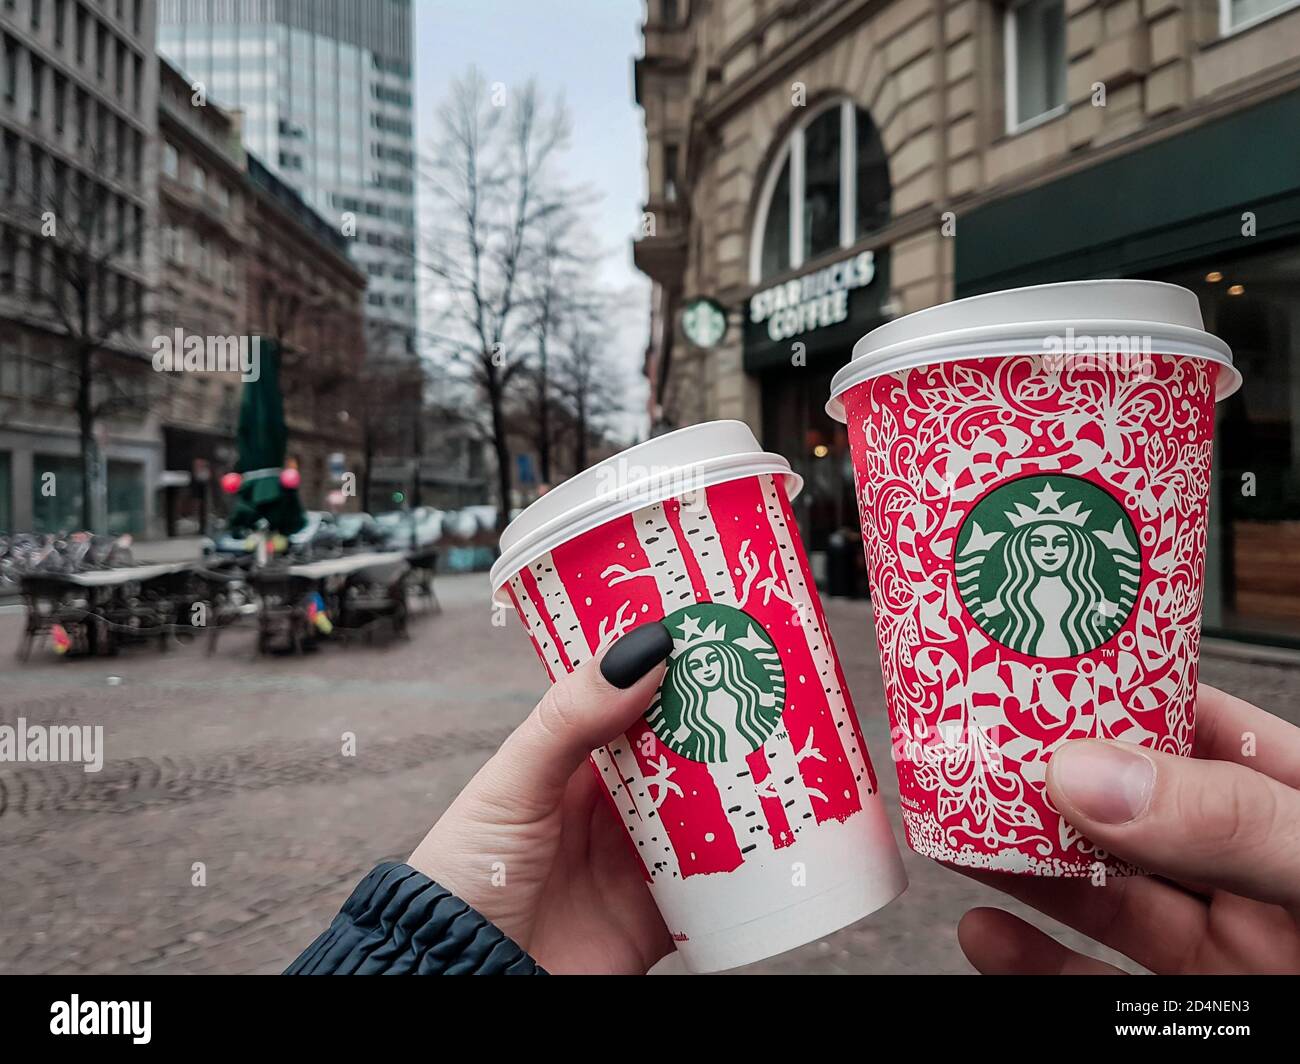 Köln / Deutschland - Neujahr 2018: Zwei Menschen halten Starbucks  Weihnachtsfeiertage rote Tassen vor dem Café in Köln. Sonderedition Einweg- Becher Stockfotografie - Alamy